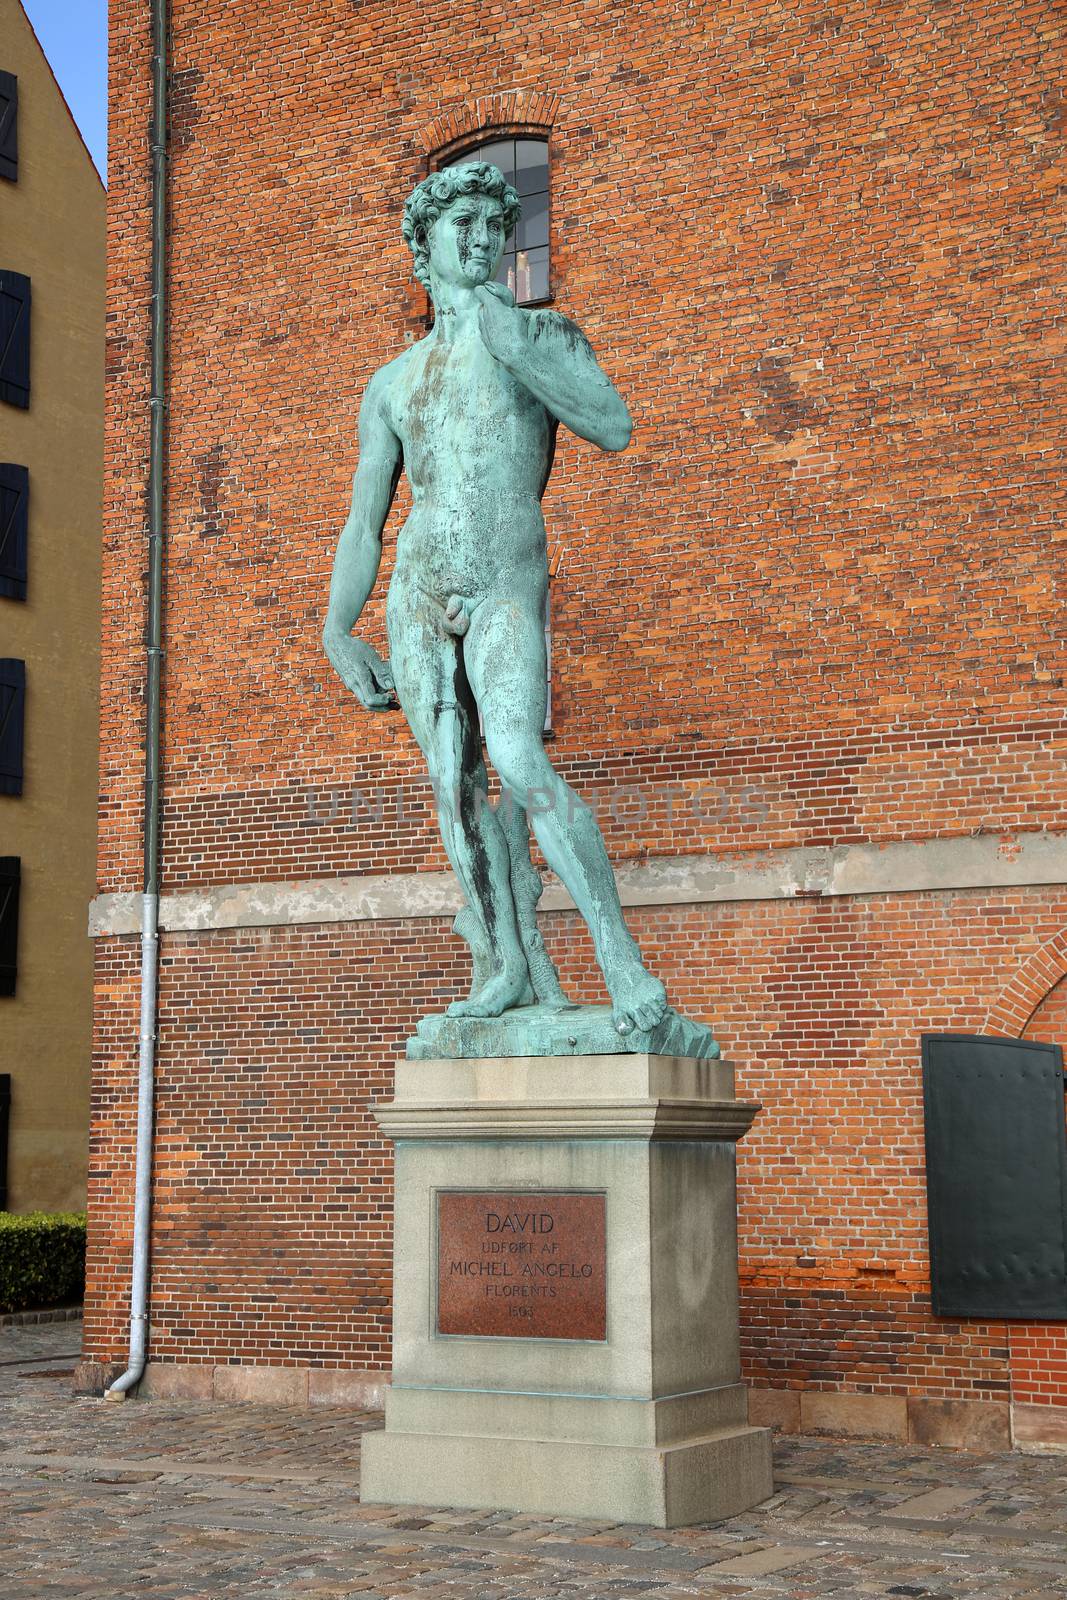 The bronze replica of Michelangelo's David statue in Copenhagen, Denmark